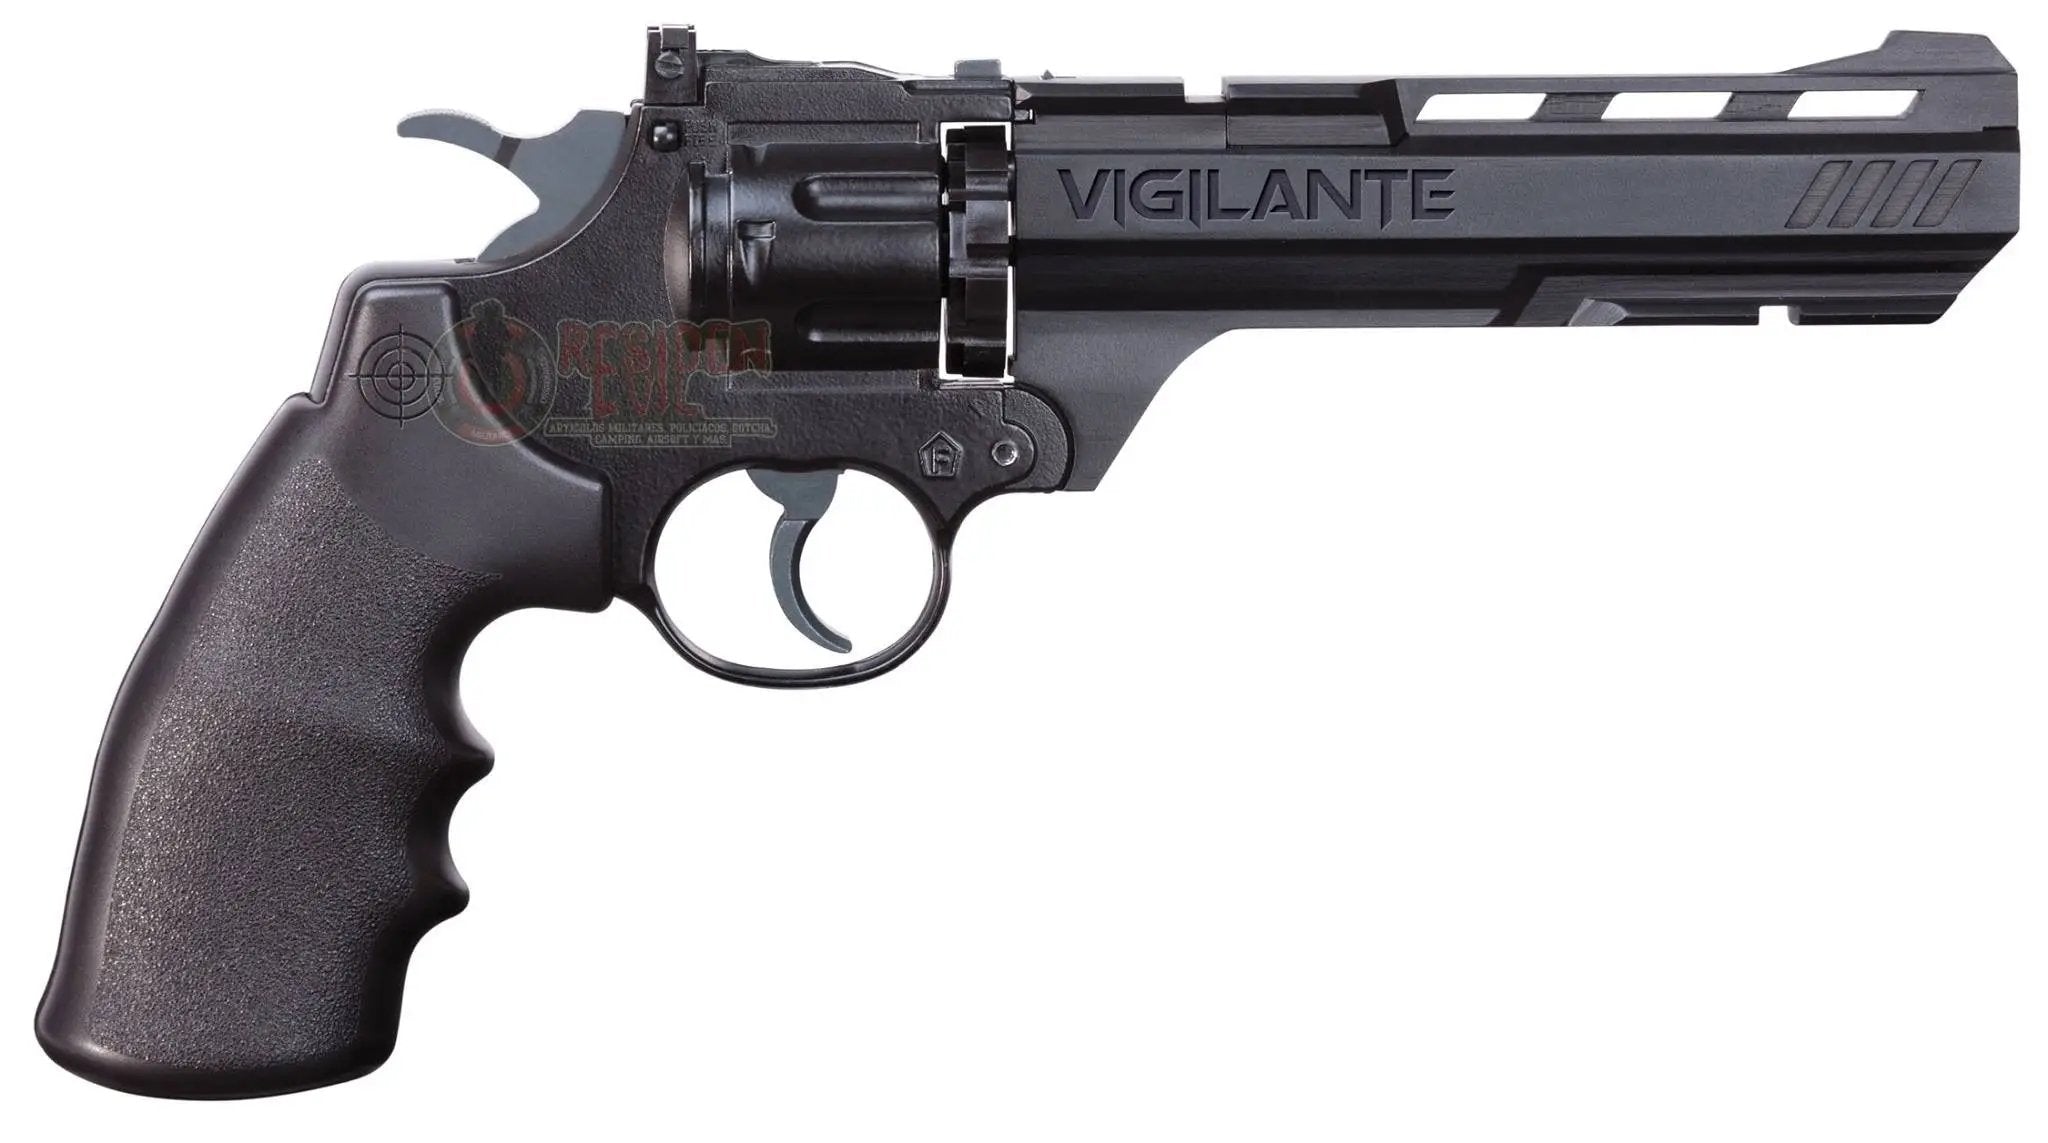 Revolver Crosman Vigilante 4. 5 Co2